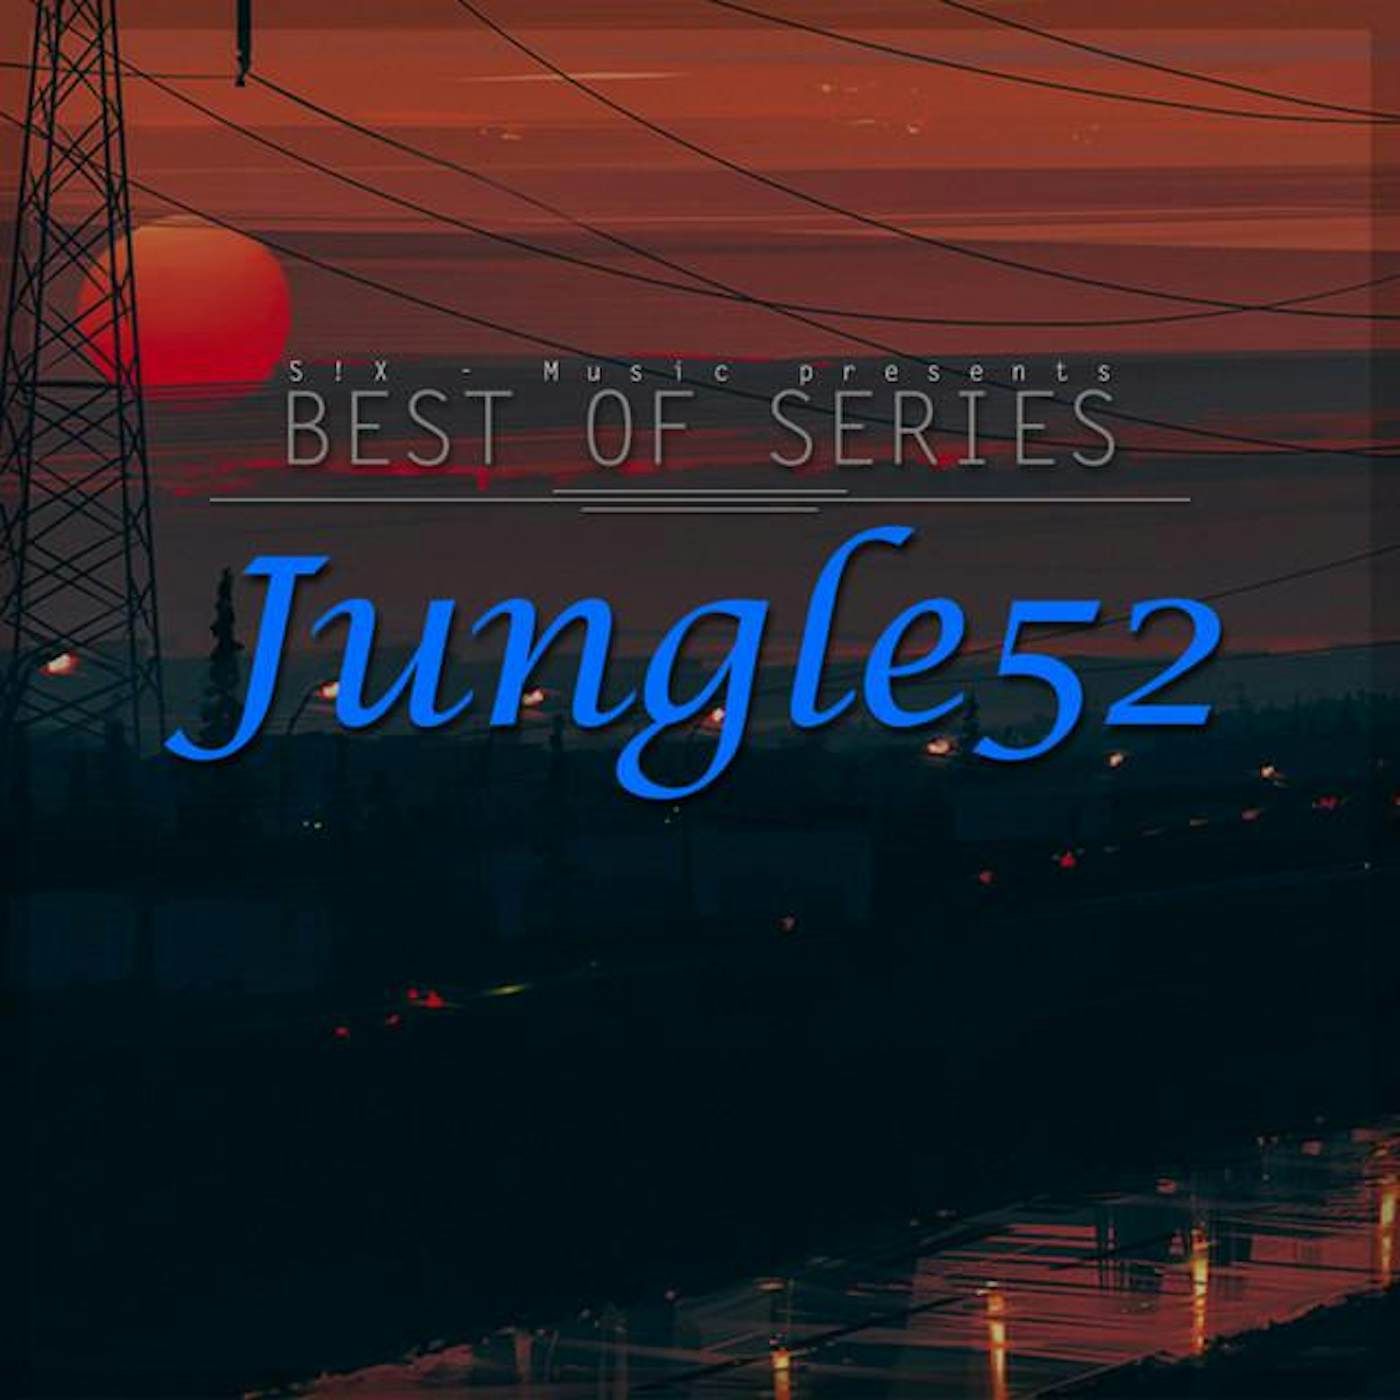 Jungle52